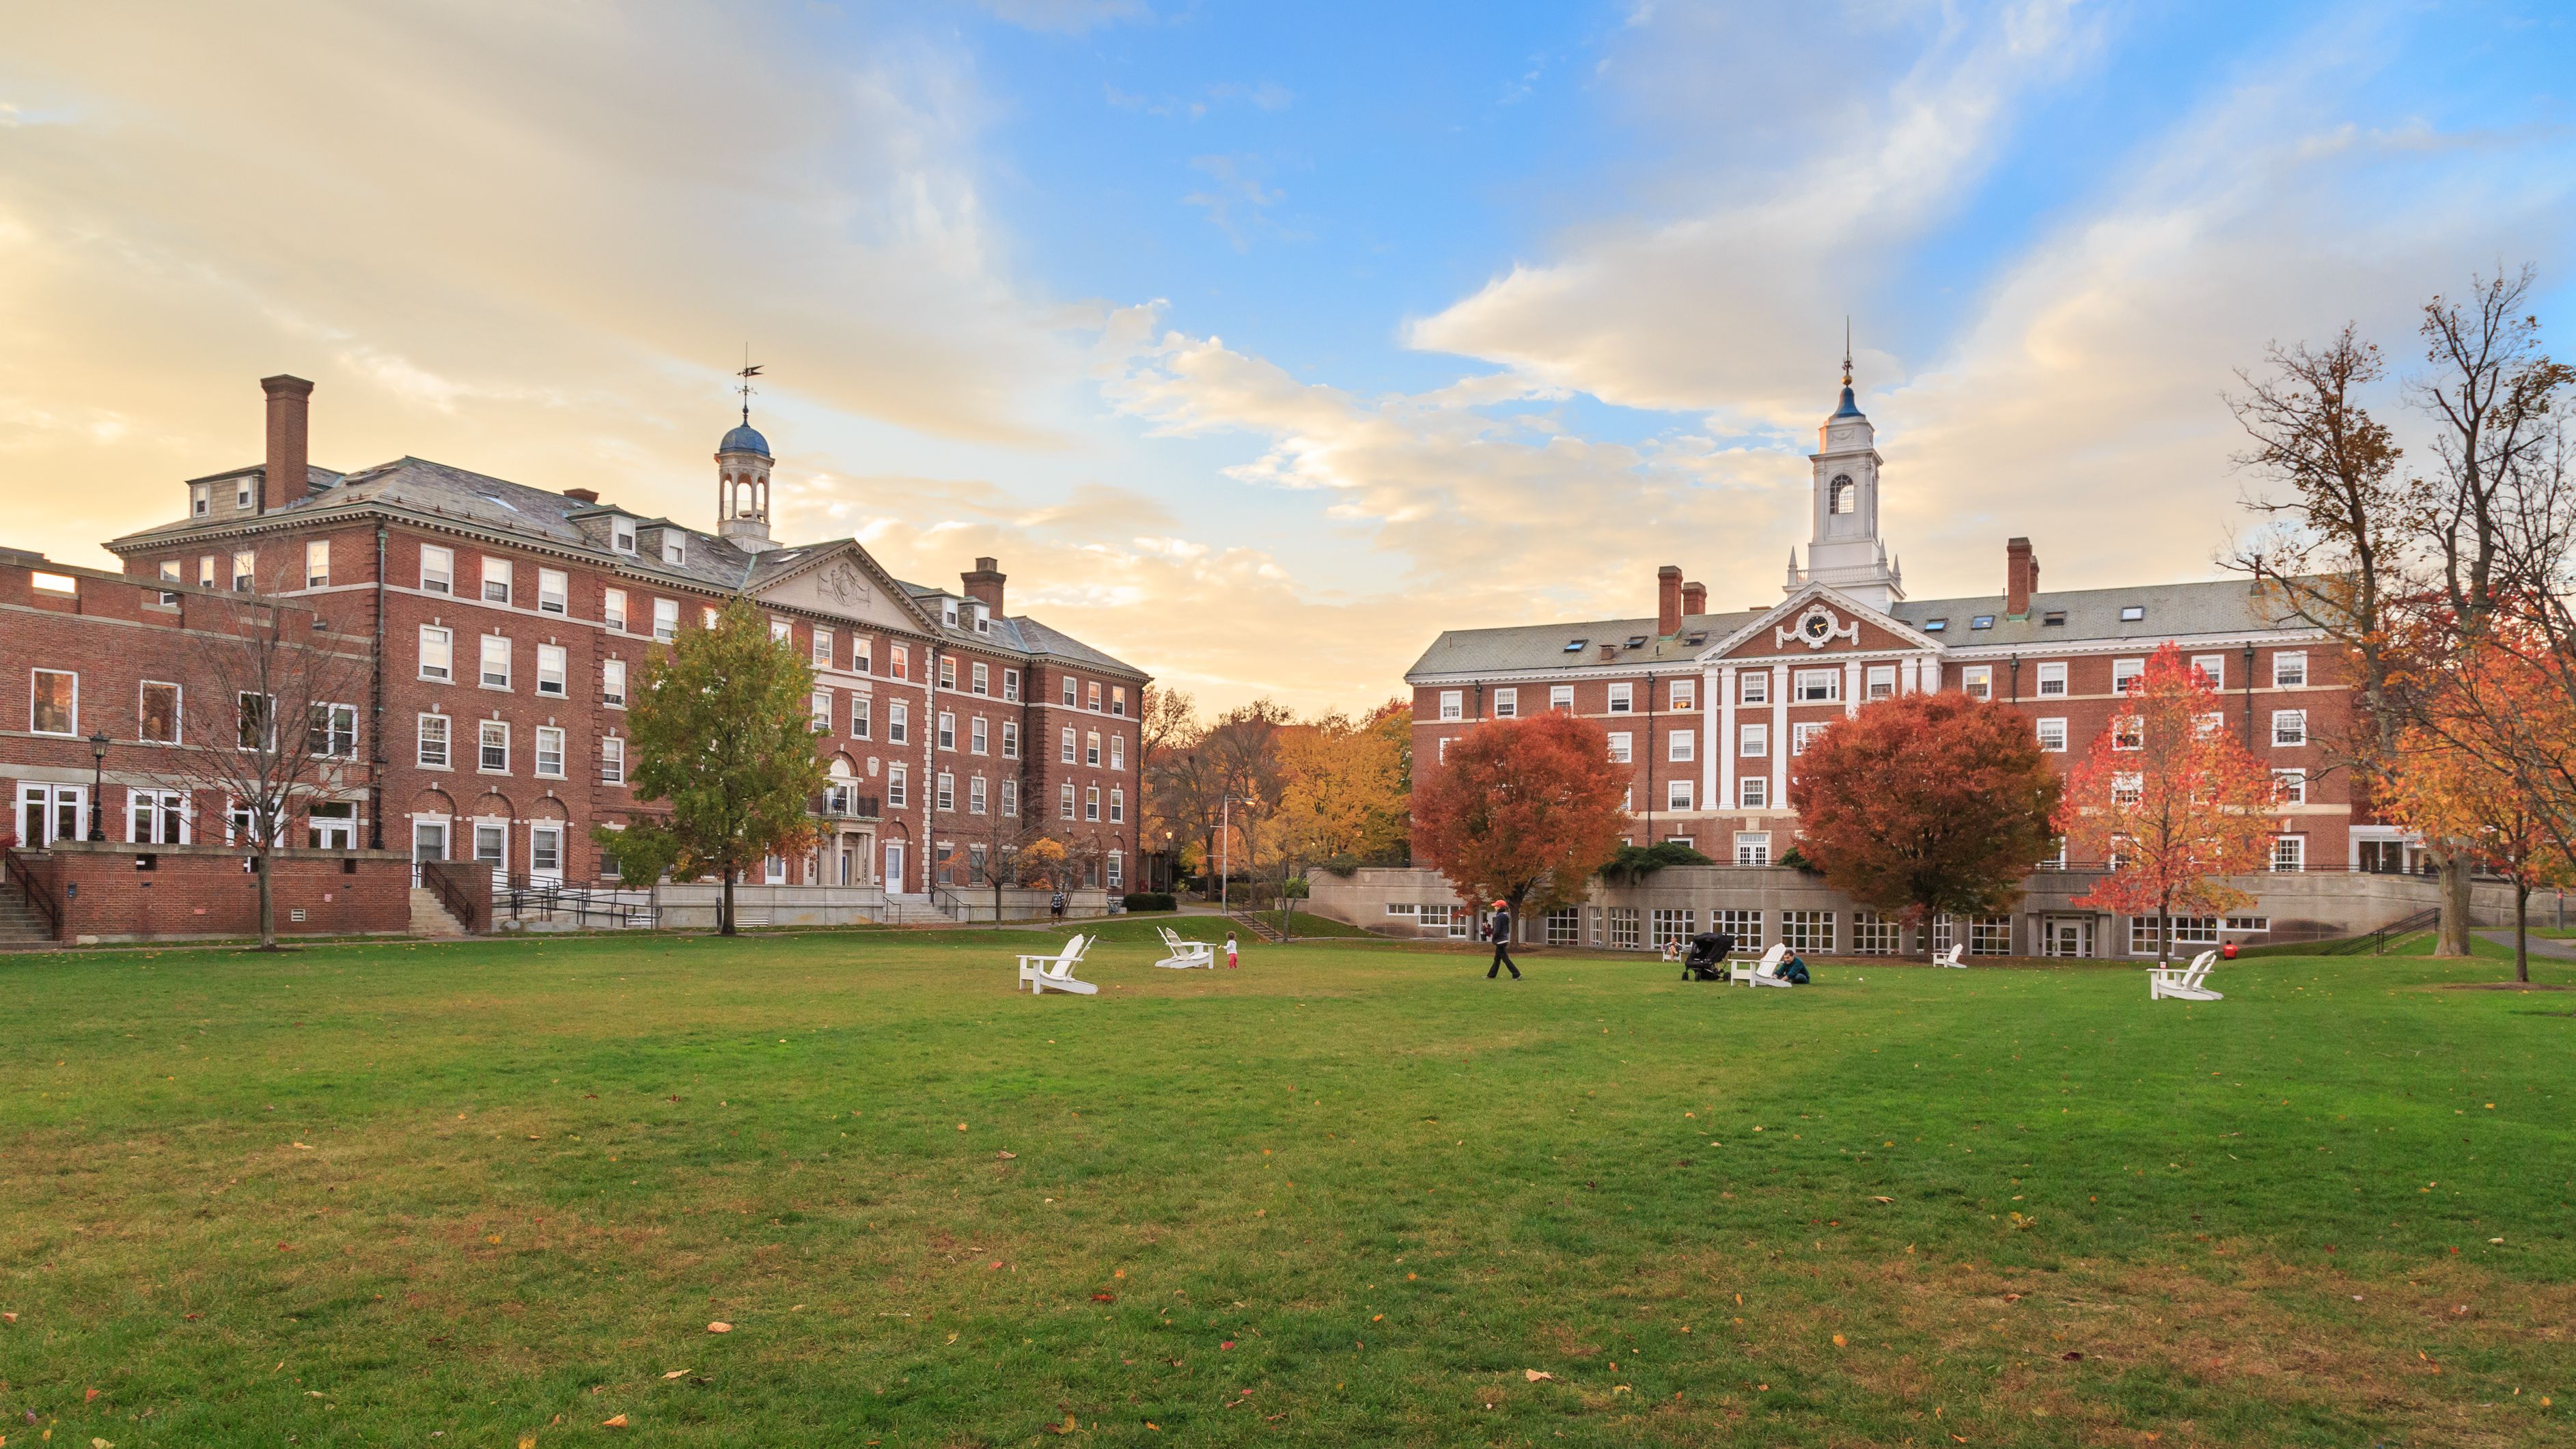 Ranked 11th in U.S., Debate Team Joins Top 10 at Harvard Tournament